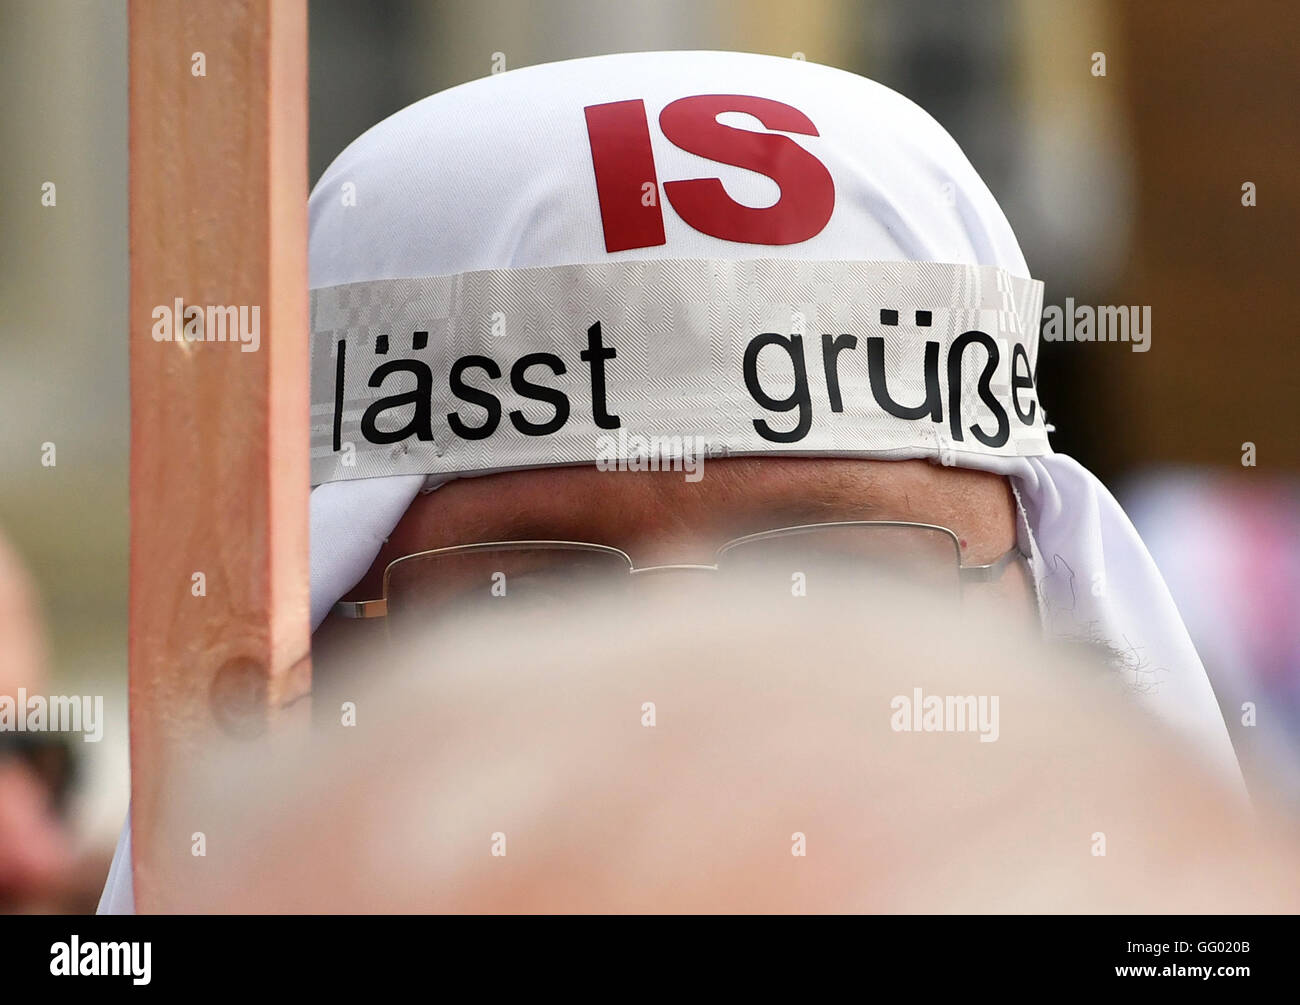 Un partisan de l'anti-islam, populiste de droite mouvement politique 'Pegida', porte un chapeau qui 'est laesst gruessen isc' (EST) vous grands lors d'une manifestation à Dresde (Saxe), Allemagne, 01 août 2016. Photo : afp-Zentralbild Banque D'Images